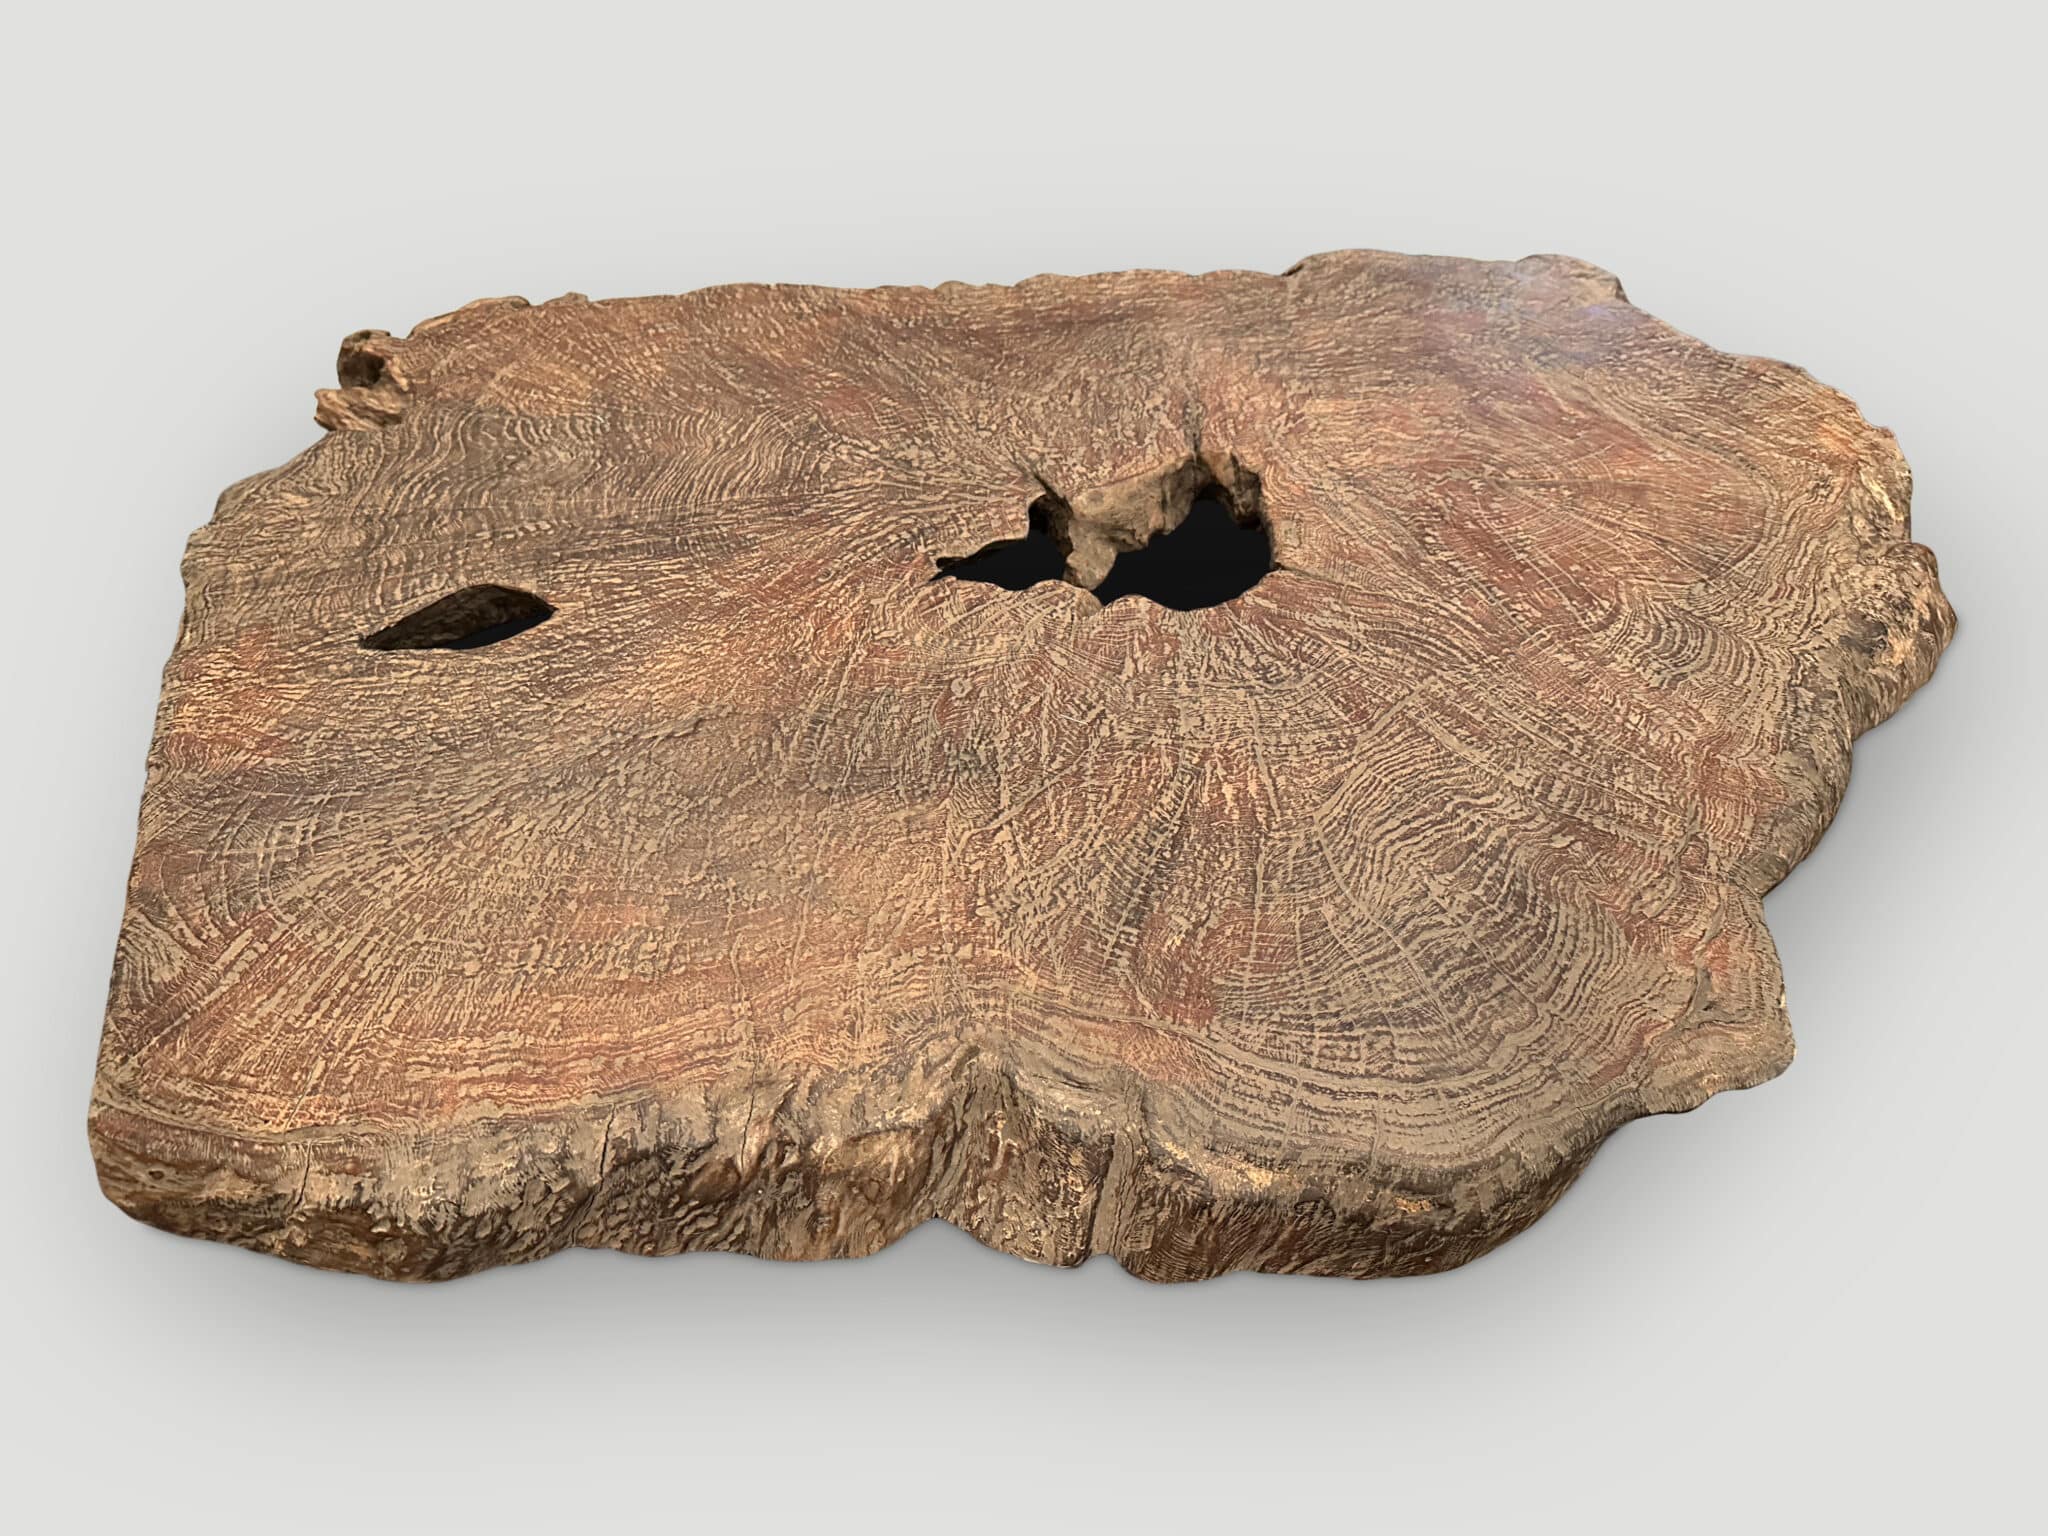 rare teak wood slab or table top